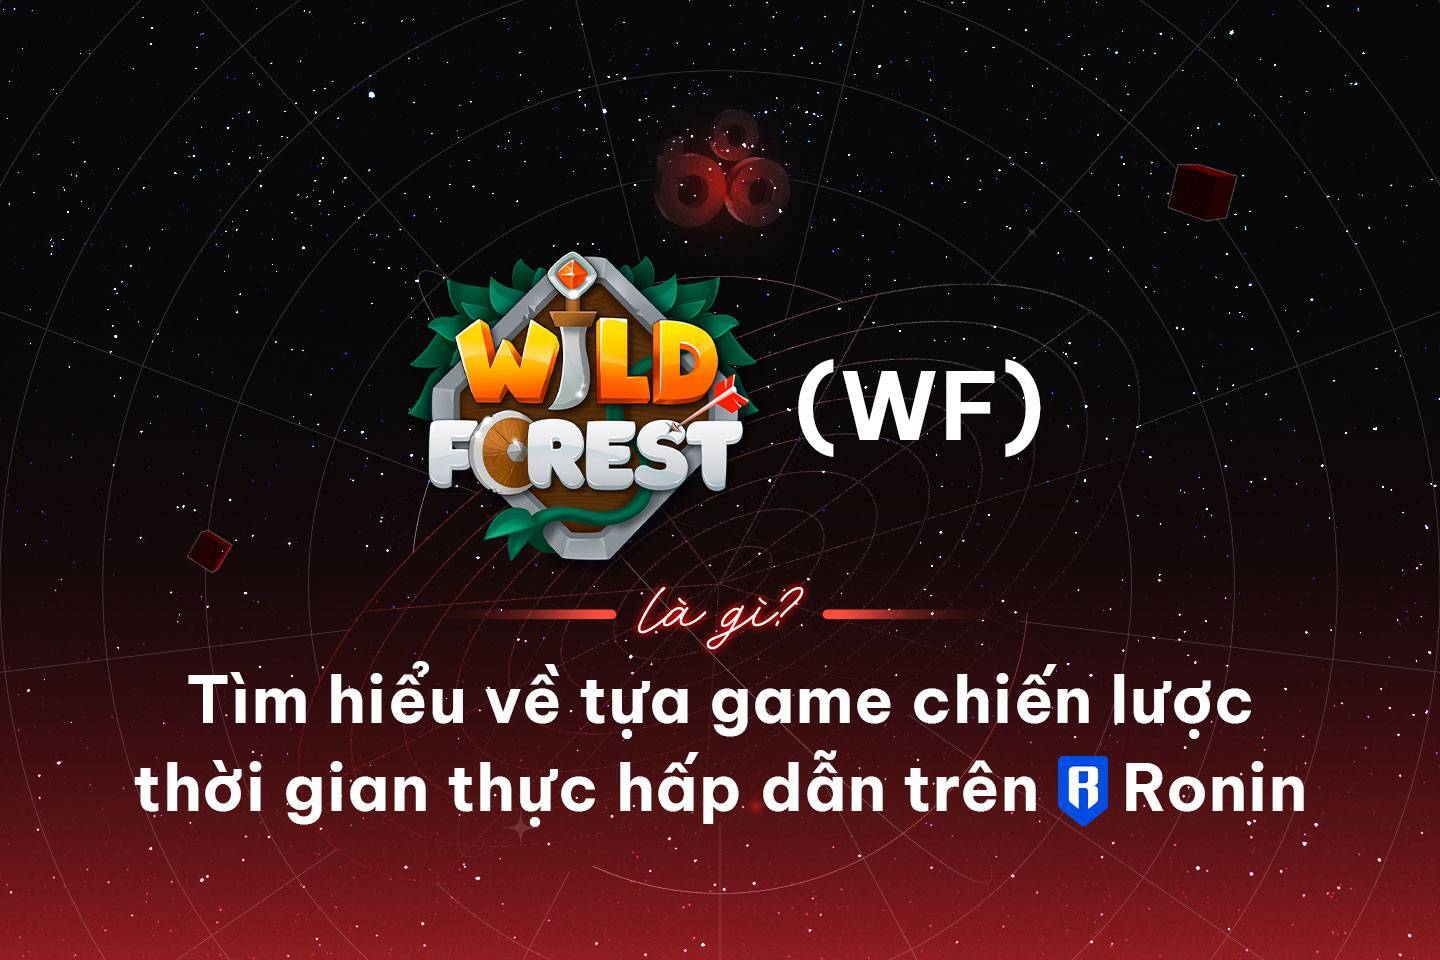 Wild Forest wf Là Gì Tìm Hiểu Về Tựa Game Chiến Lược Thời Gian Thực Hấp Dẫn Trên Ronin